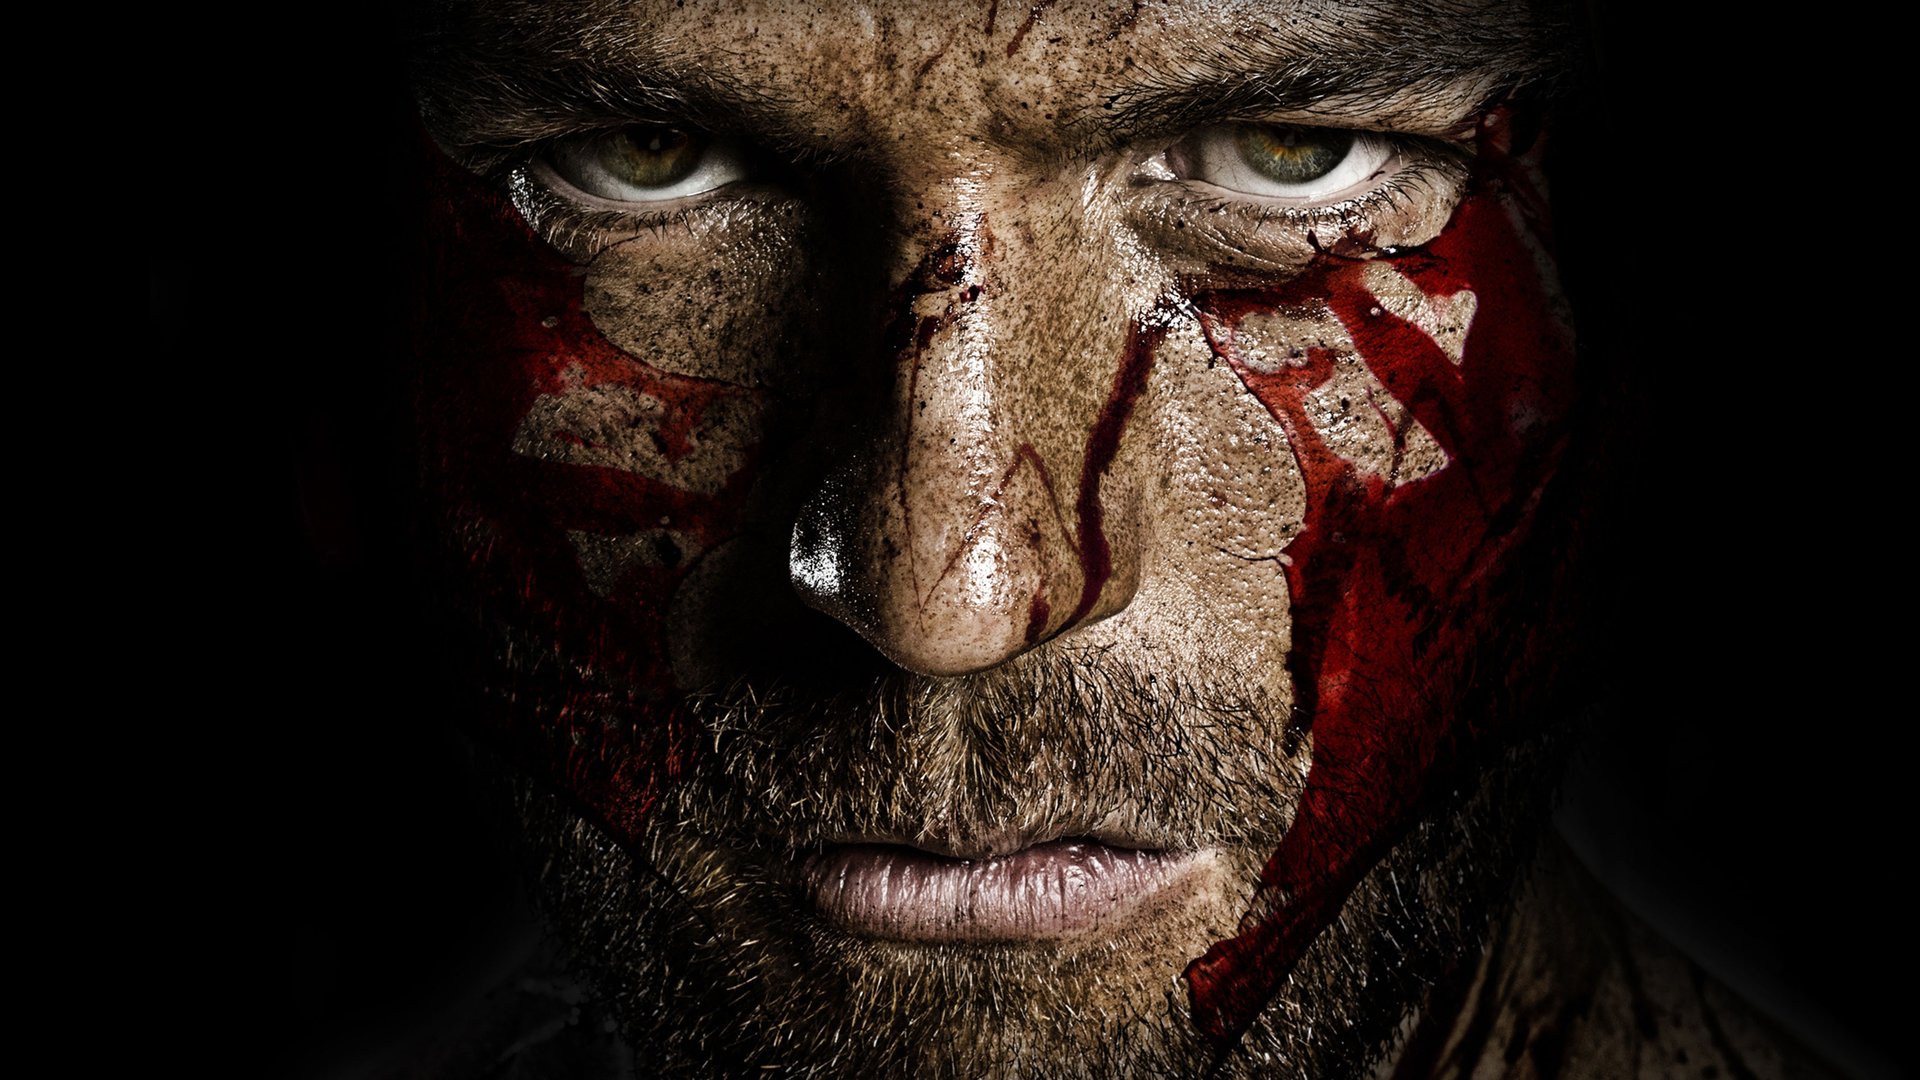 სპარტაკი: დაწყევლილთა ომი სეზონი 3 / Spartacus: War of the Damned Season 3 ქართულად